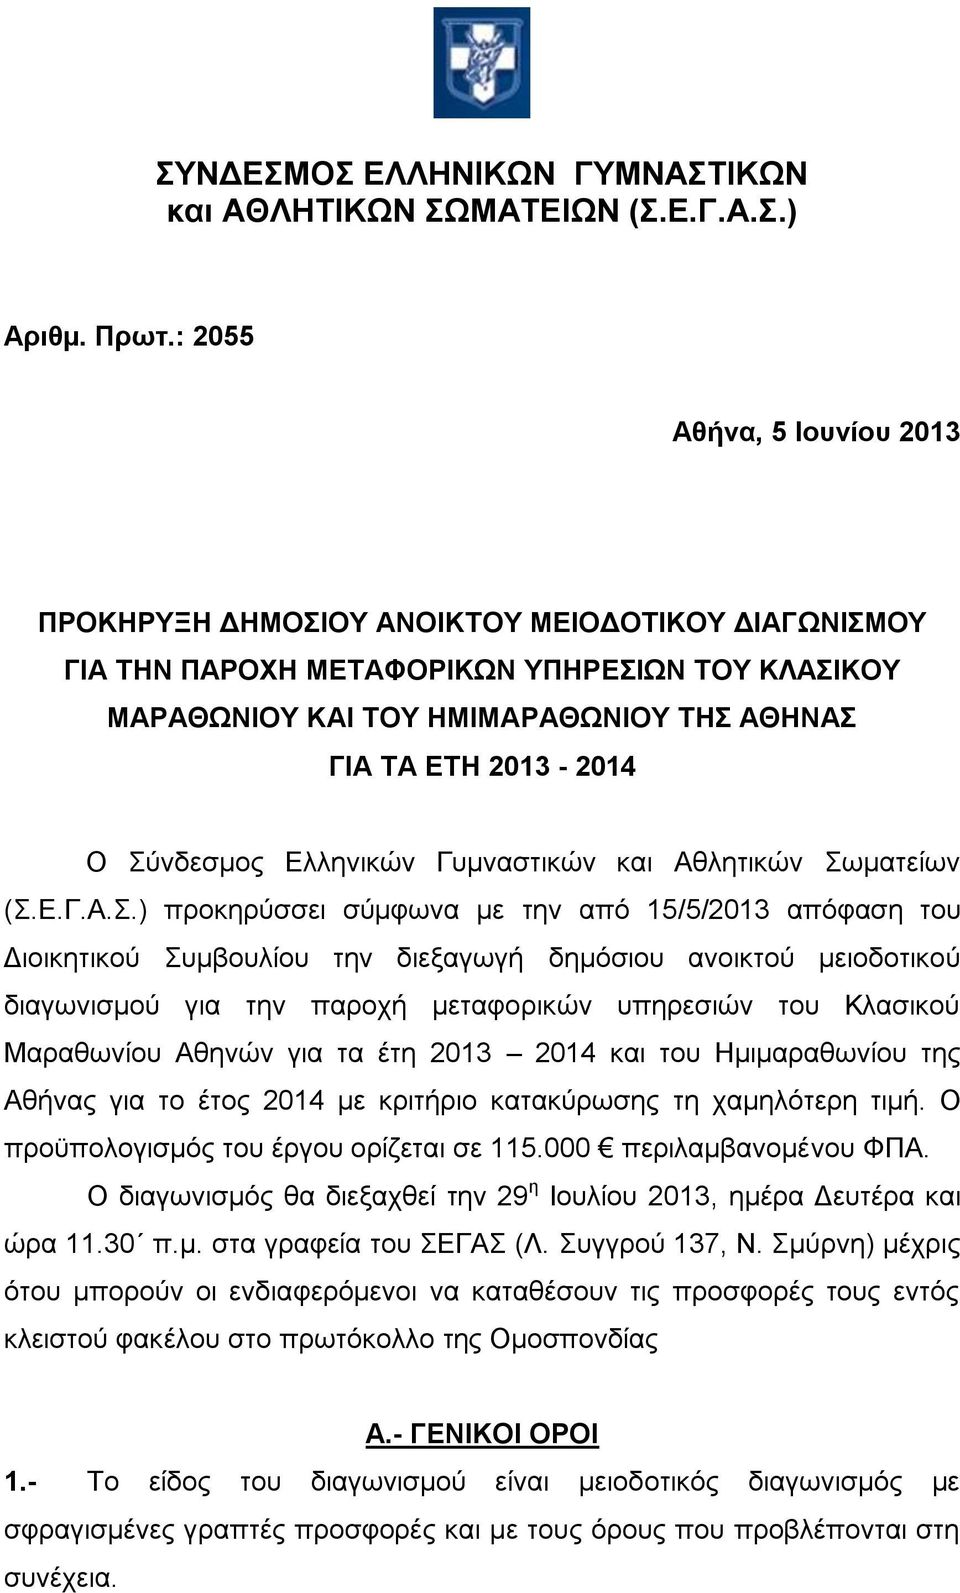 Σύνδεσμος Ελληνικών Γυμναστικών και Αθλητικών Σωματείων (Σ.Ε.Γ.Α.Σ.) προκηρύσσει σύµφωνα µε την από 15/5/2013 απόφαση του Διοικητικού Συμβουλίου την διεξαγωγή δημόσιου ανοικτού μειοδοτικού